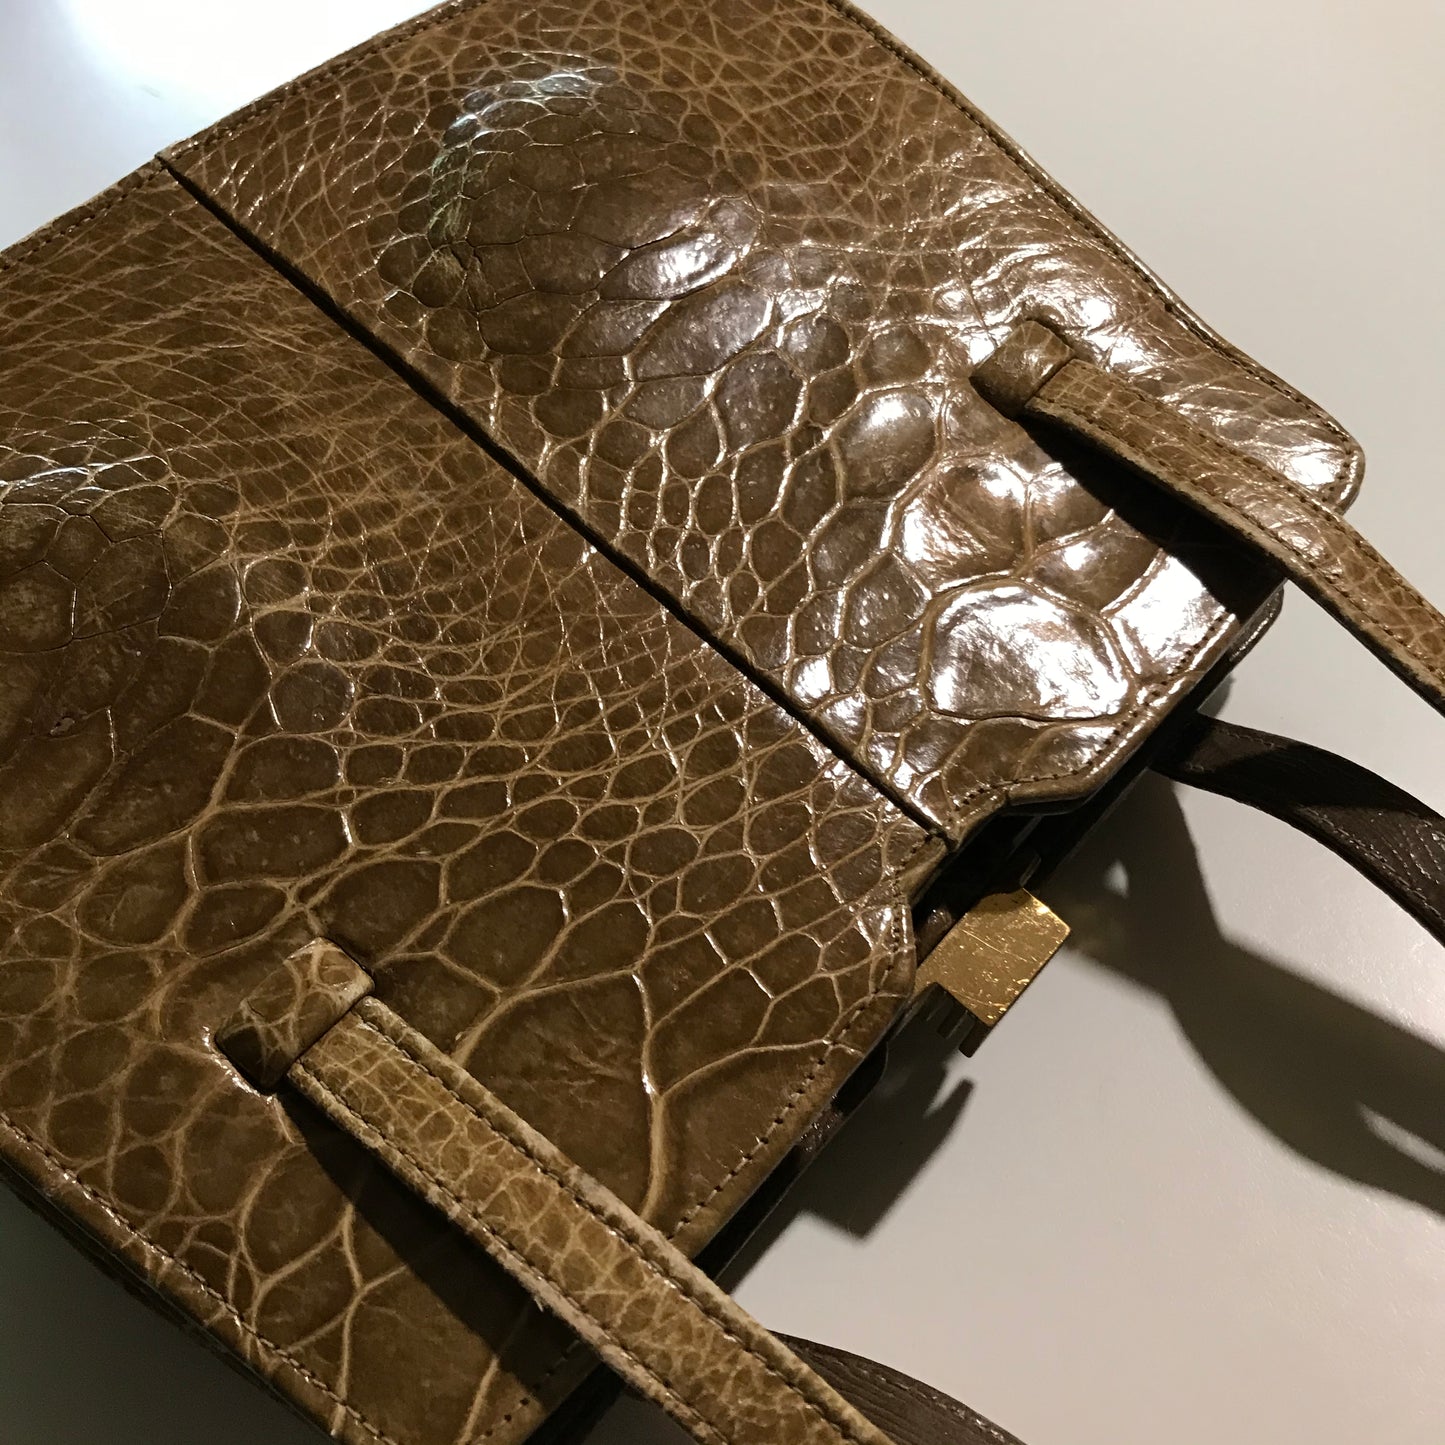 Golden Tan Multi-pocket Alligator Handbag circa 1940s